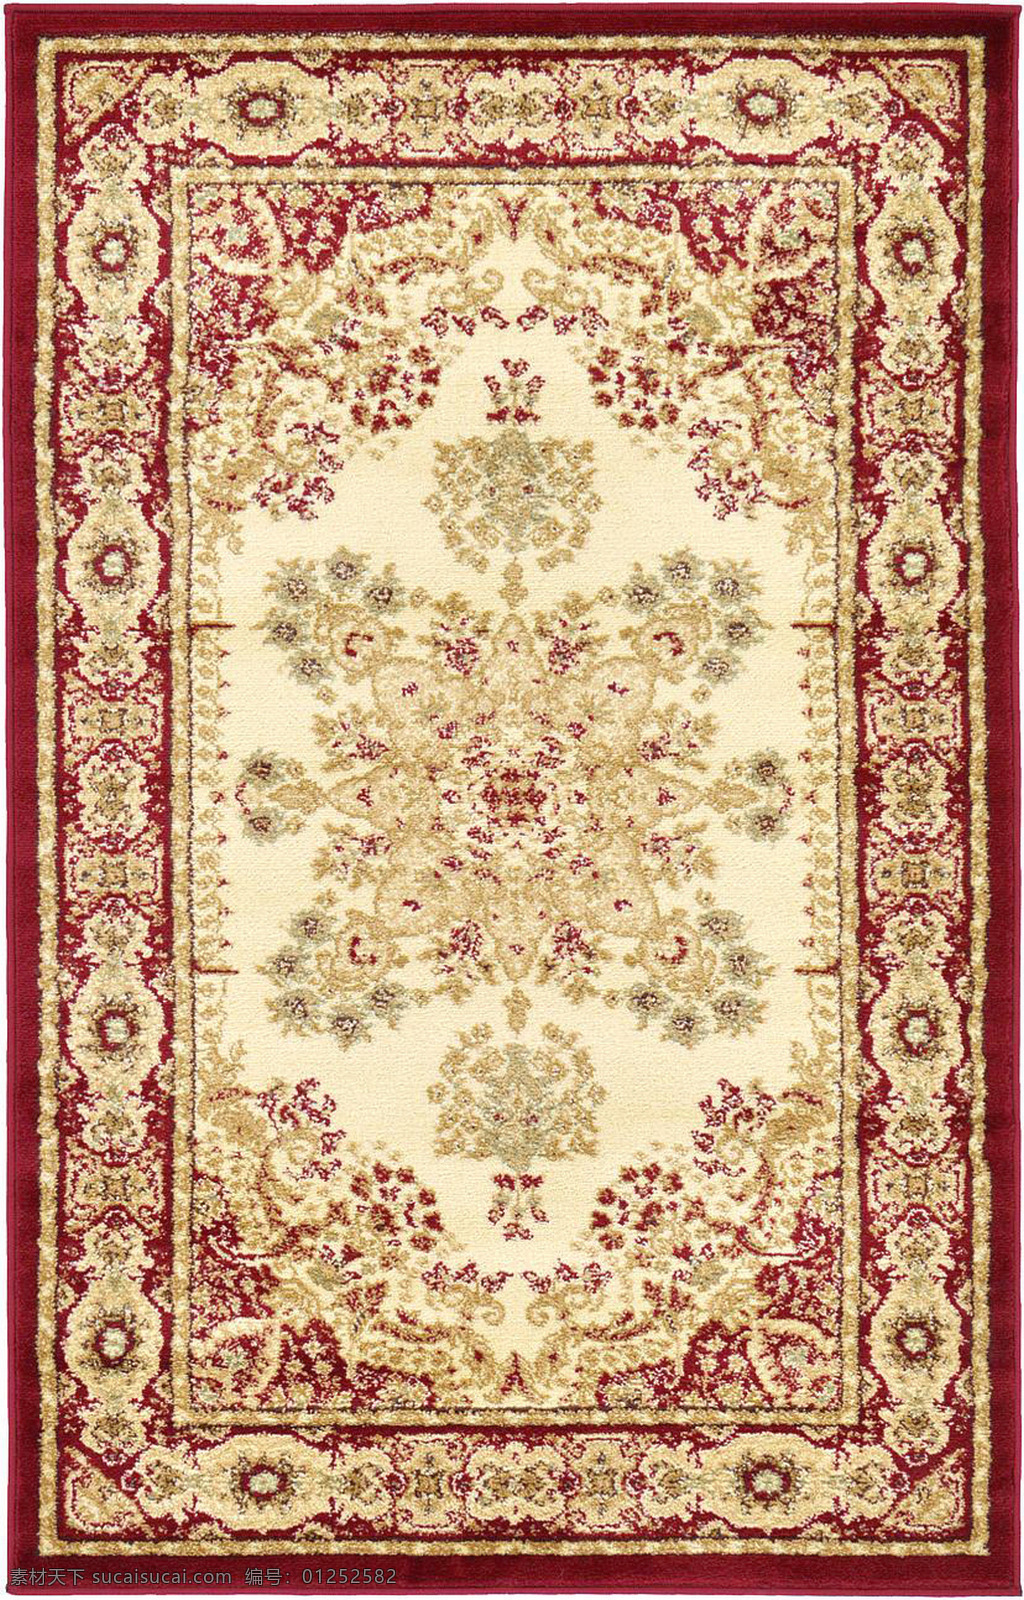 红 金色 花纹 经典 地毯 材质 贴图 纹理 室内设计 地毯纹理 环境设计 坐垫 矩形 毛毯 图纹 布料